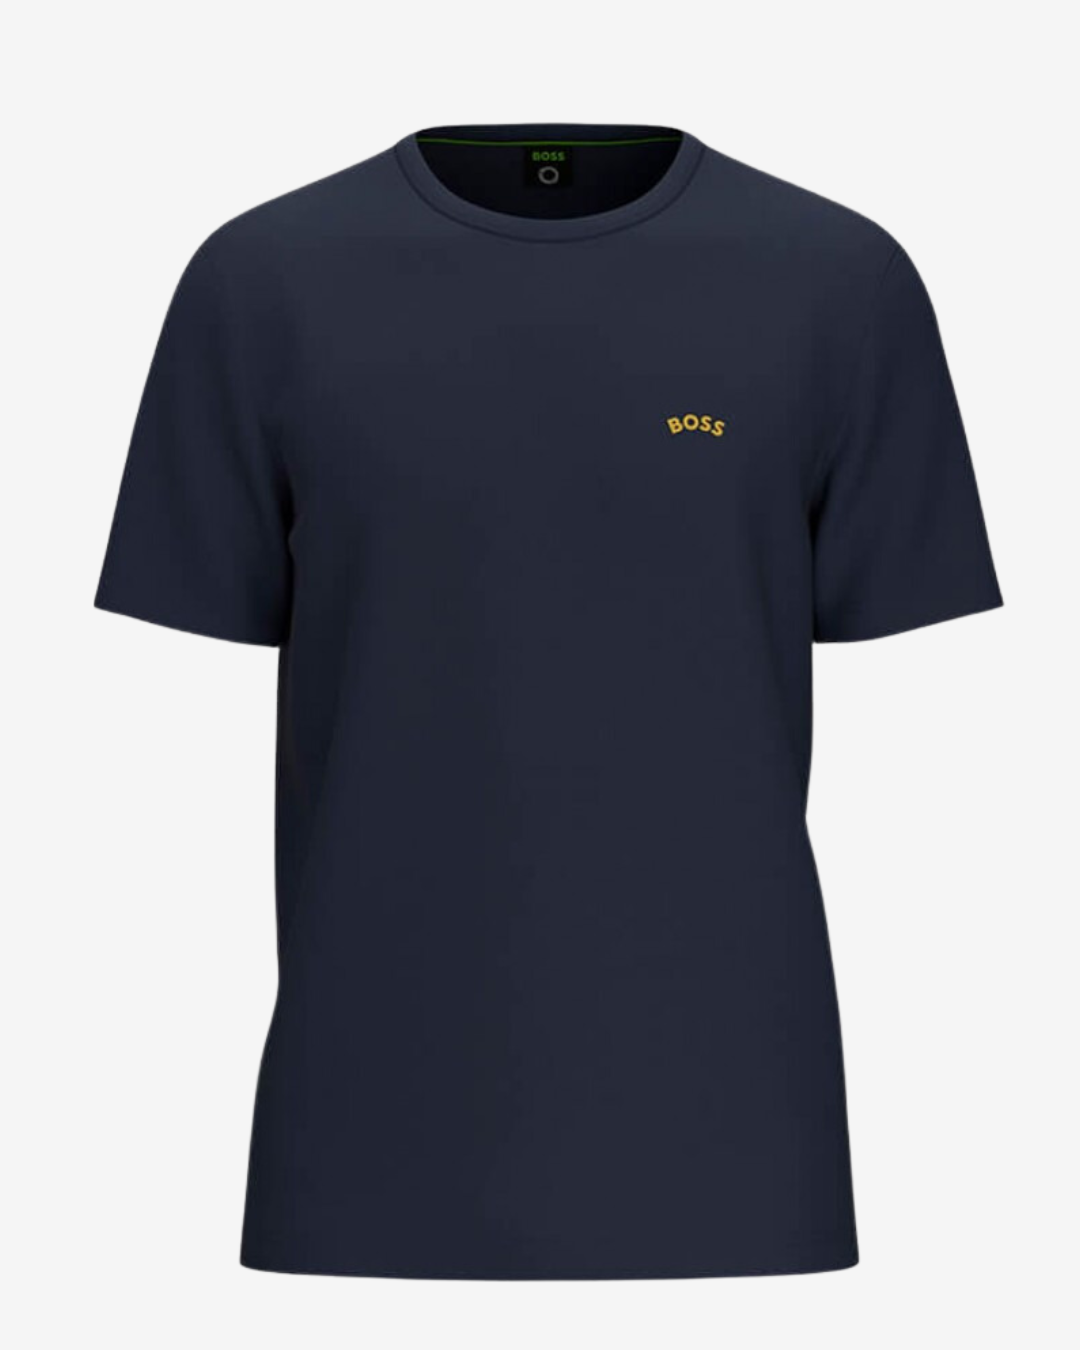 Se Hugo Boss Curved logo t-shirt - Navy / Guld - Str. M - Modish.dk hos Modish.dk